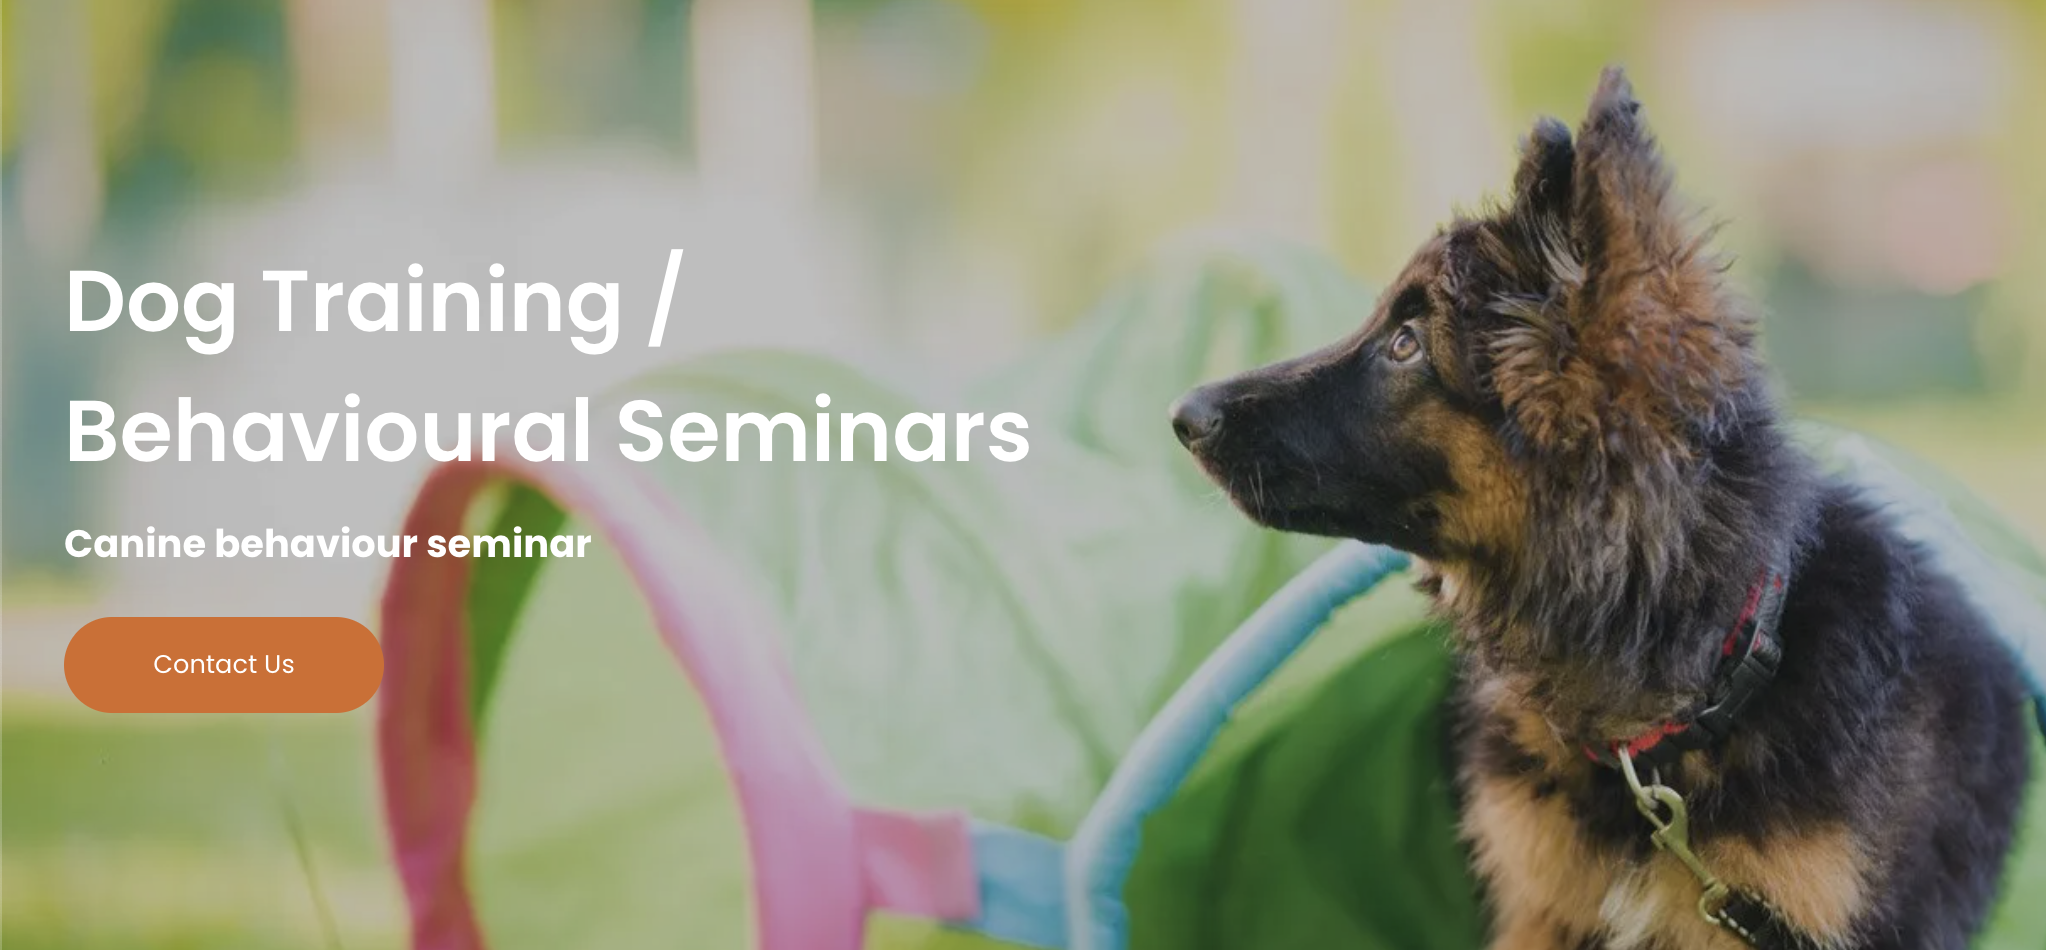 Dog Training / Behavioural Seminars